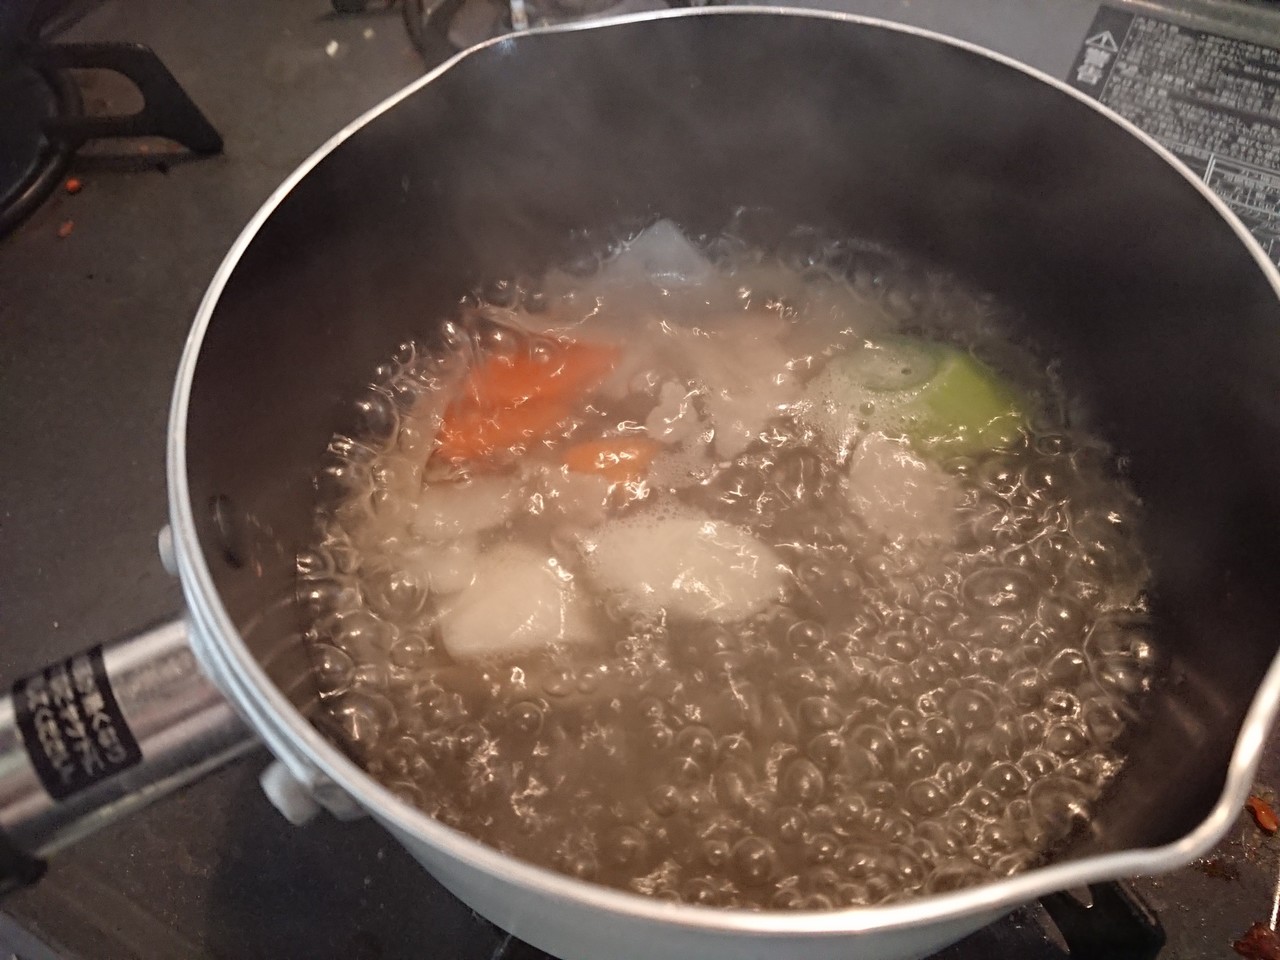 スープジャー1つで満足ランチへの道 レシピその3 お雑煮風 関東風 風原 Note